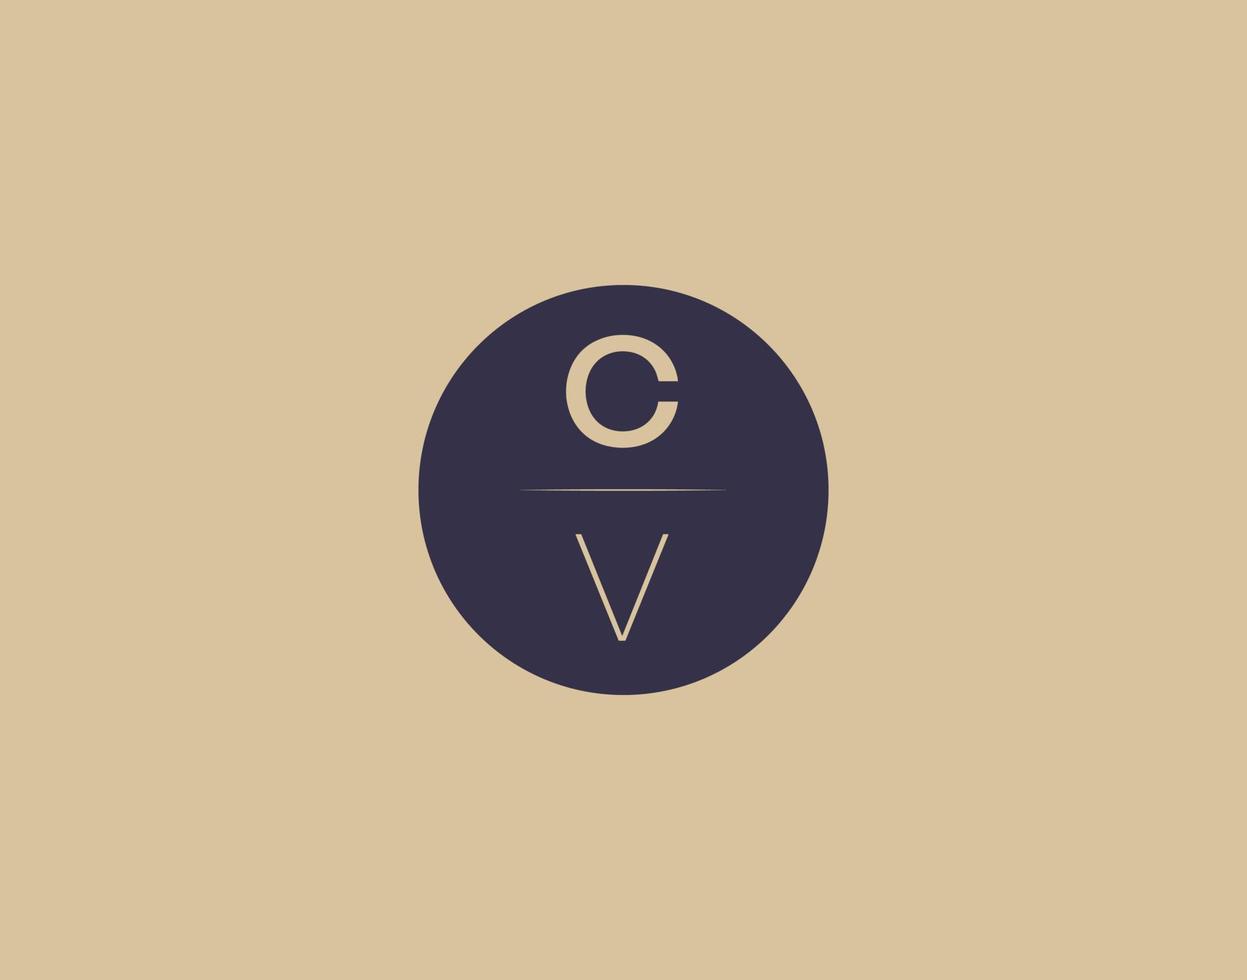 imagens vetoriais de design de logotipo moderno e elegante de carta cv vetor